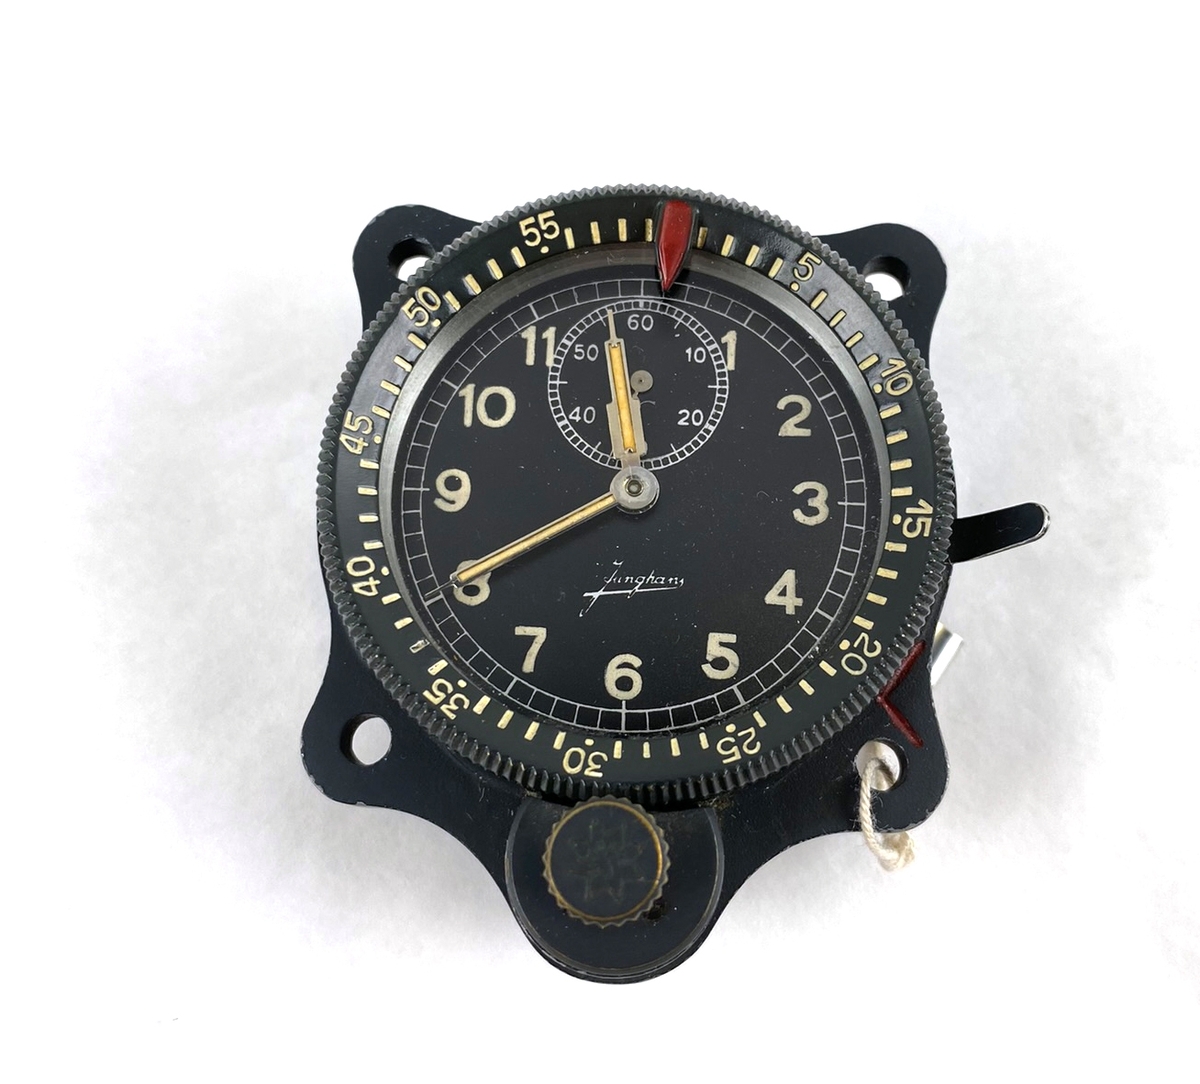 Uret är ett 12 timmarsur. På urtavlan finns ett sekundur samt runt uret finns en vridbar ring som är graderad 0-60 min. Original från flygplan S 14, Fieseler Fi 156 Storch.